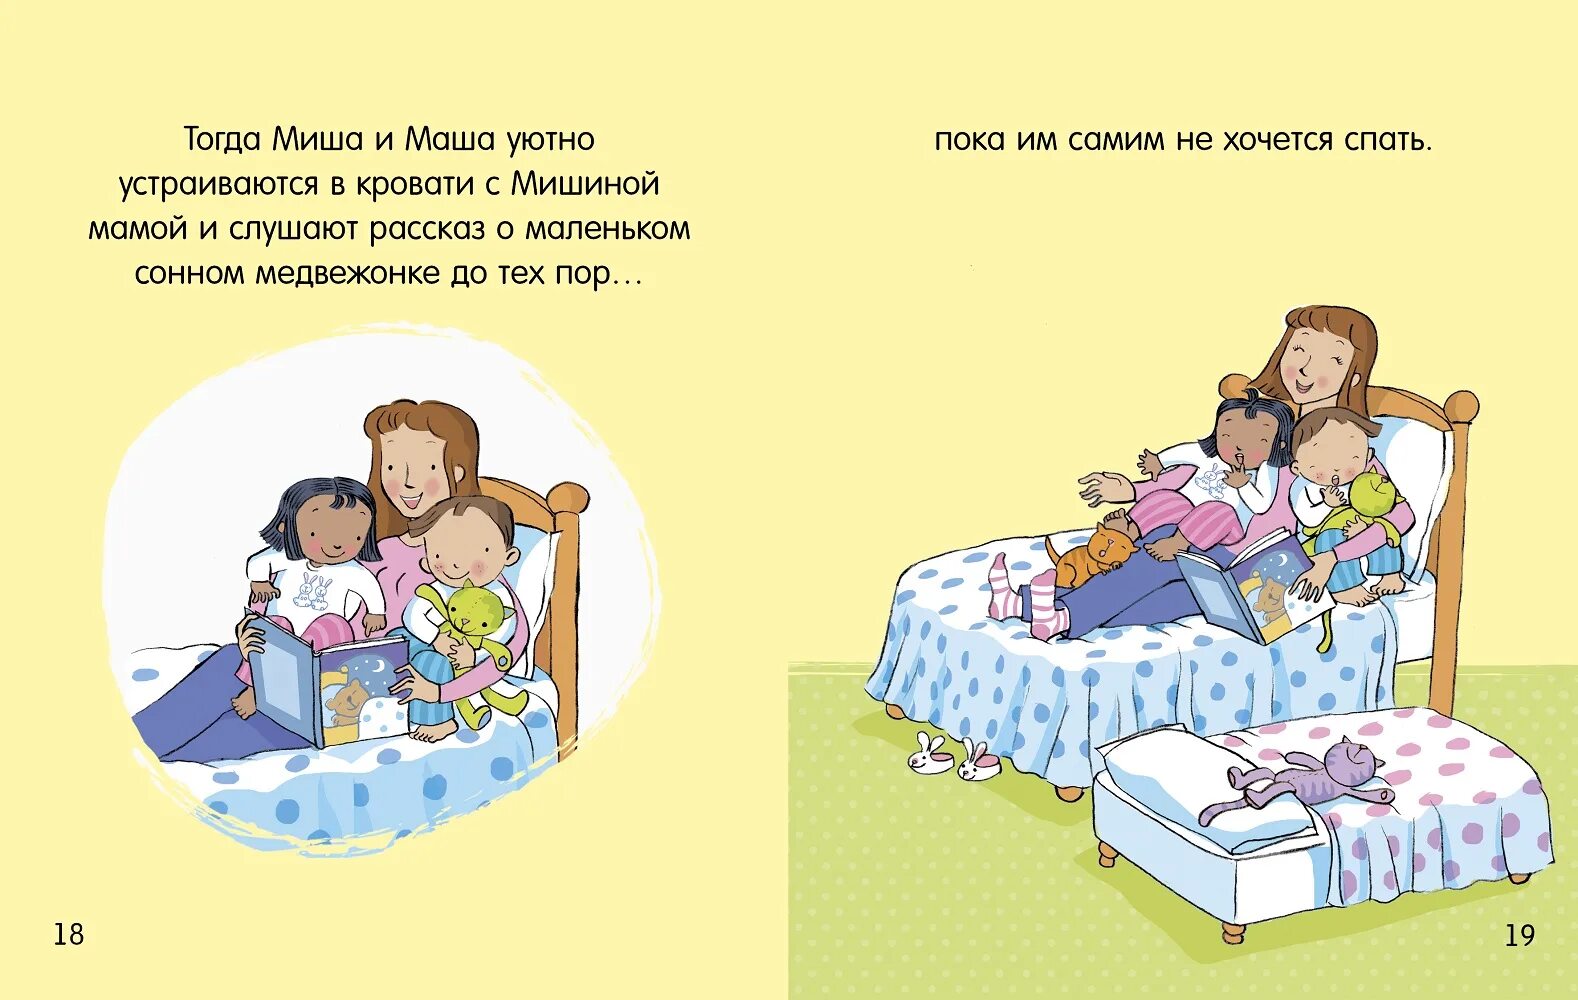 Почему маша живет с мишей. Фелисити Брукс «Маша и Миша идут в детский сад». Маша и Миша Фелисити. Миша и Маша пора спать. Спать пора уснули дети.